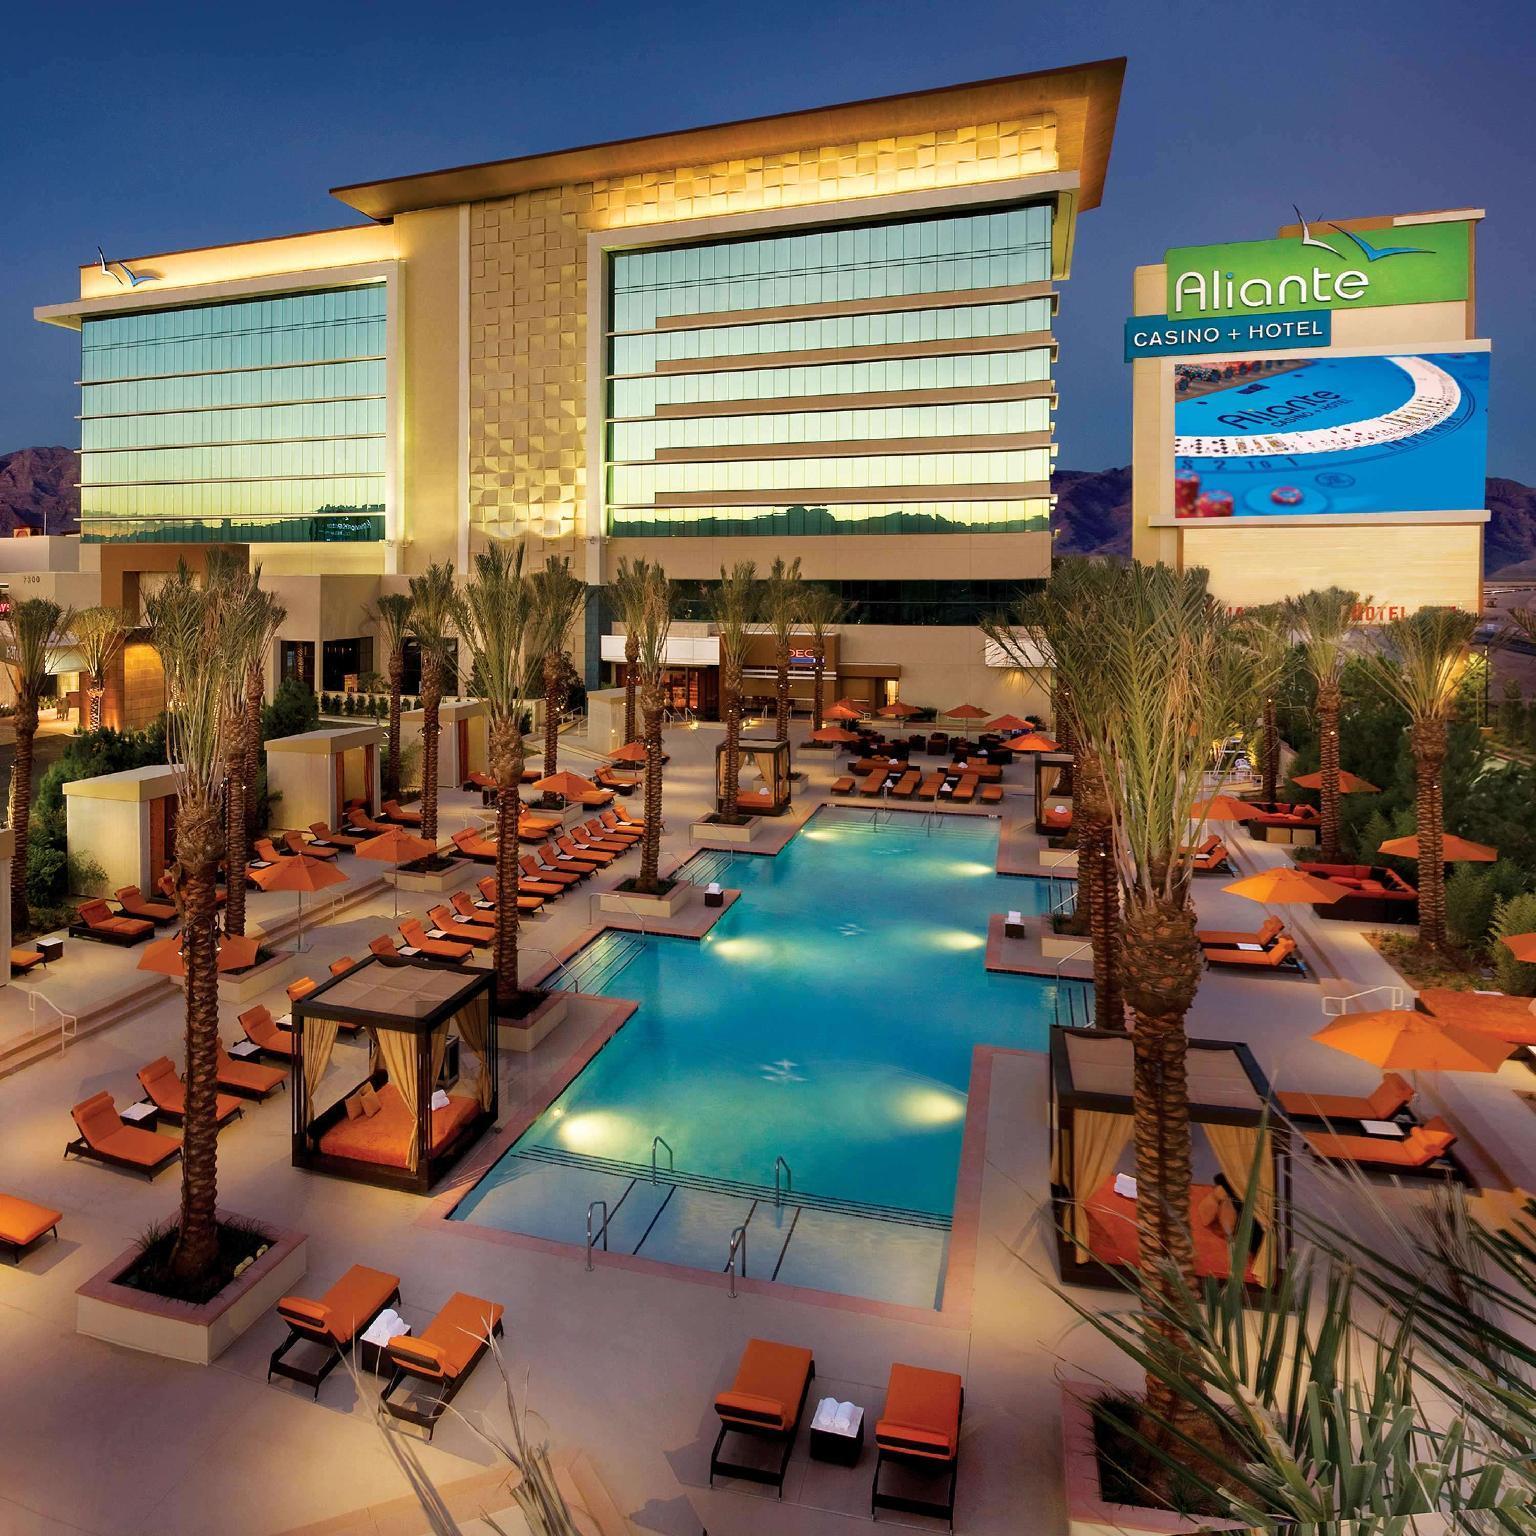 Aliante Casino + Hotel - Nevada